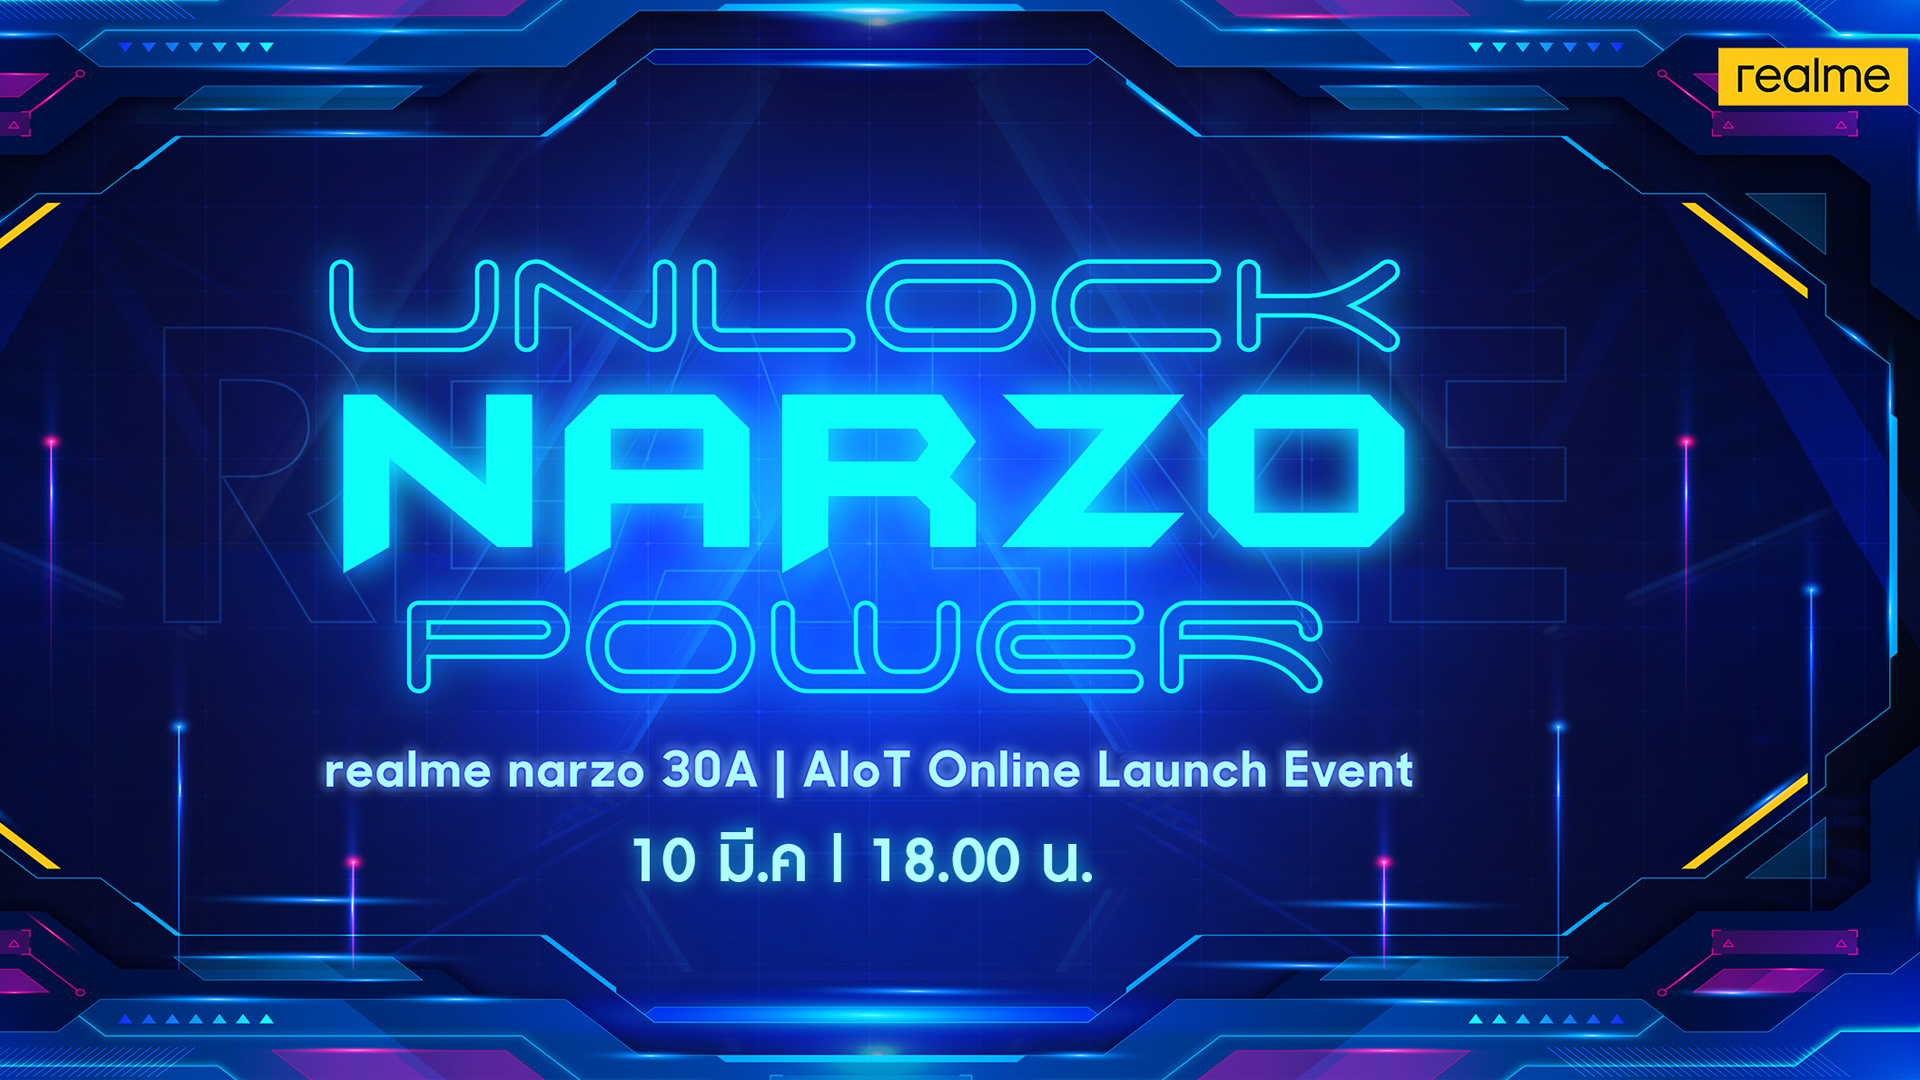 เตรียมพบ realme narzo 30A สมาร์ตโฟนชิปเซ็ตเกมมิงทรงพลัง พร้อมผลิตภัณฑ์ AIoT ใหม่ล่าสุด 10 มีนาคมนี้